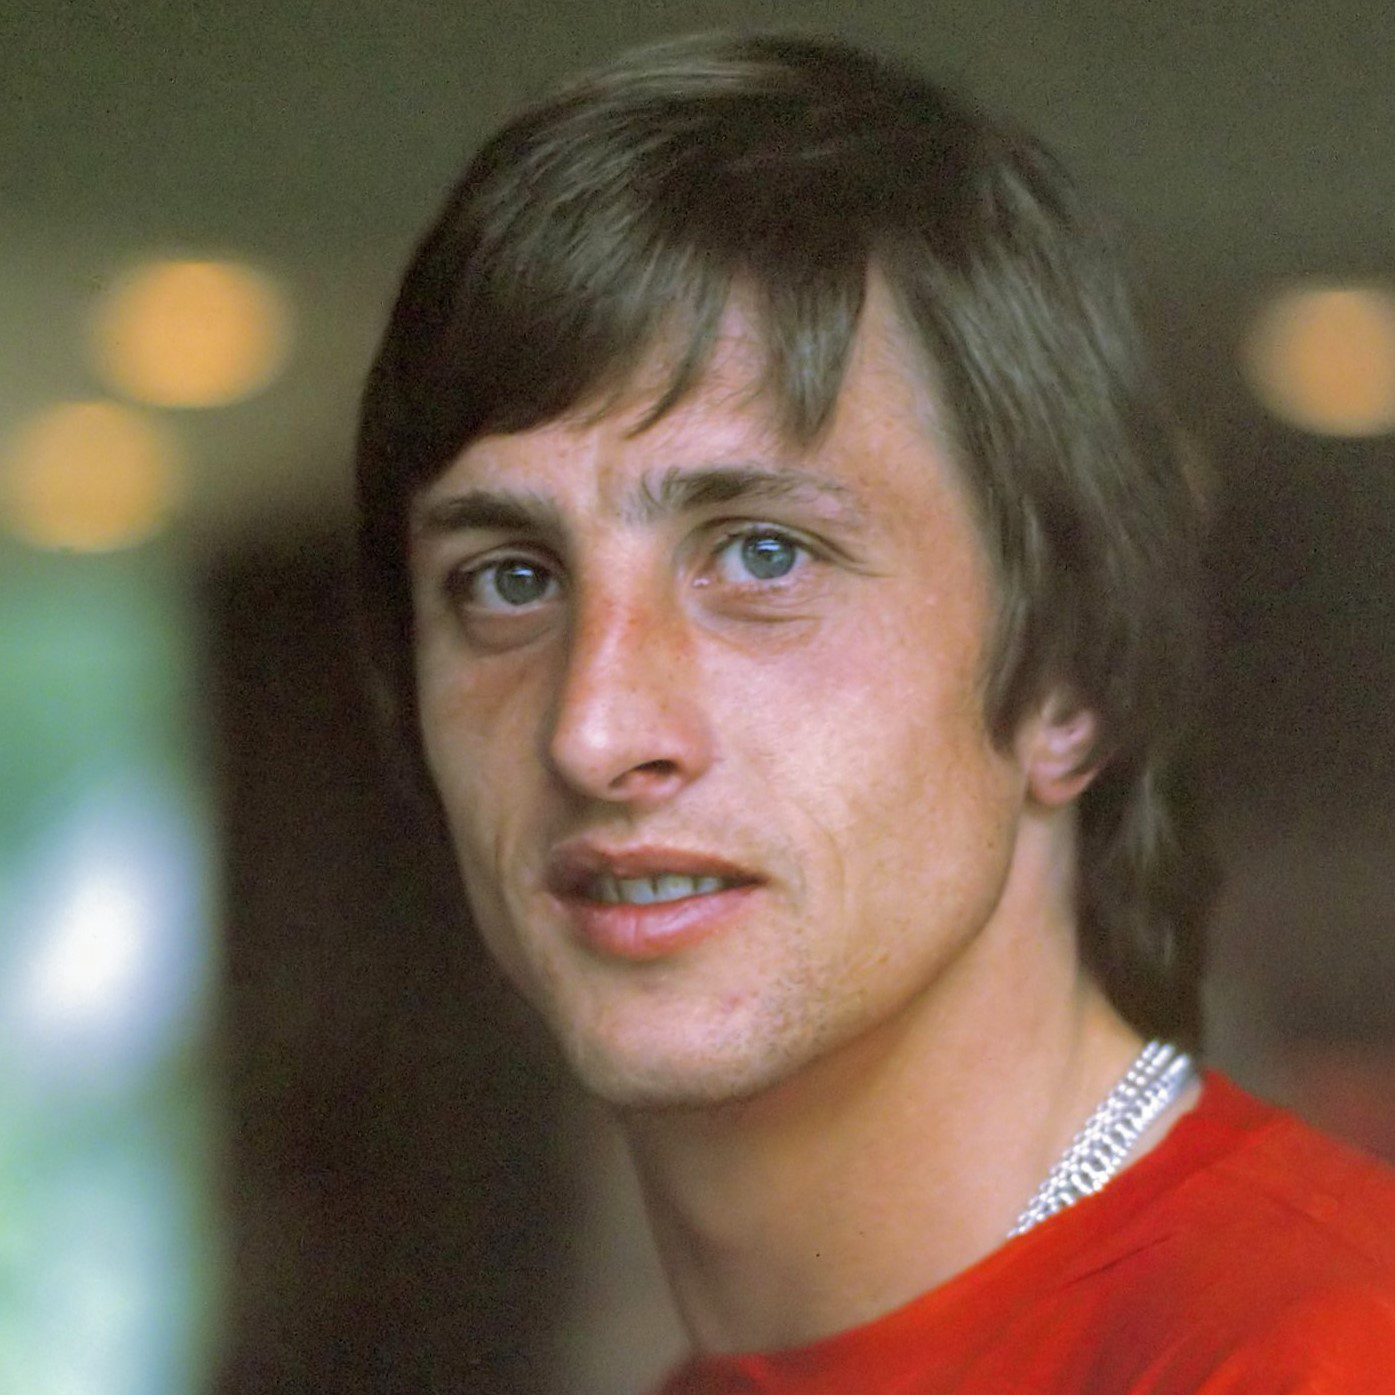 Johan Cruyff tipe kepribadian MBTI image